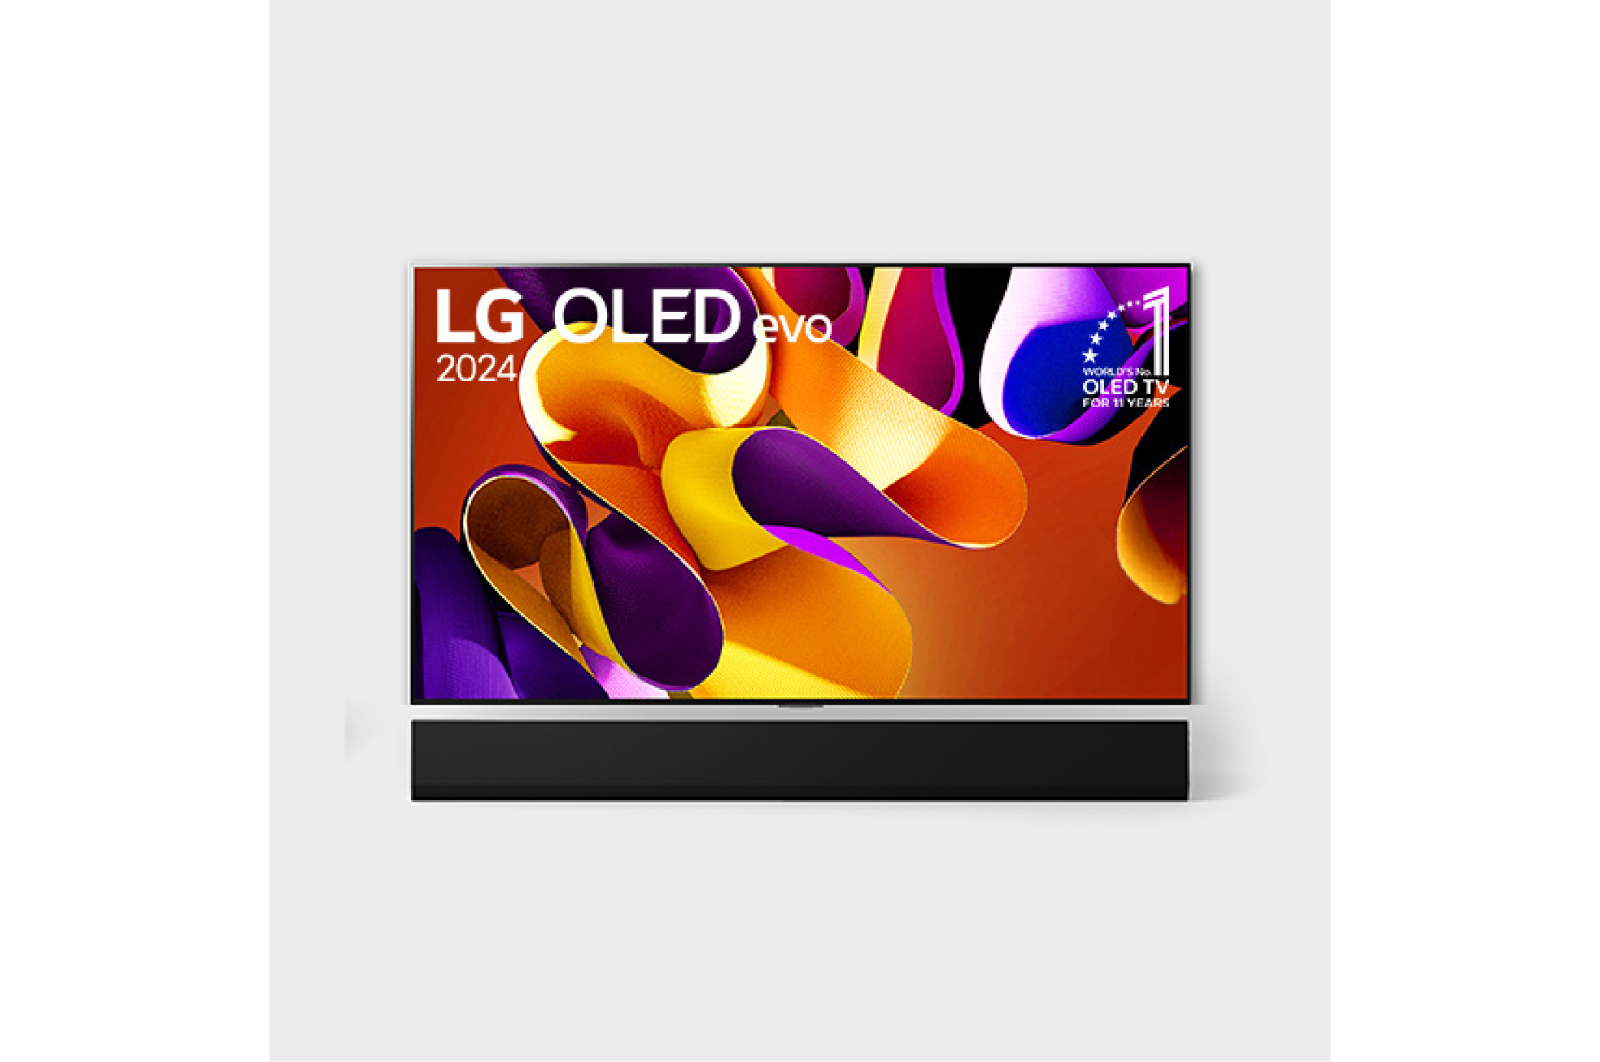 LG TV LG 65 Inch OLED evo G4 4K Smart TV OLED65G4PSA, Hình ảnh mặt trước với LG OLED TV evo, OLED G4, Logo biểu tượng OLED 11 năm đứng đầu thế giới và logo Bảo hành bảng điều khiển 5 năm trên màn hình, cùng với Soundbar ở bên dưới, OLED65G4PSA